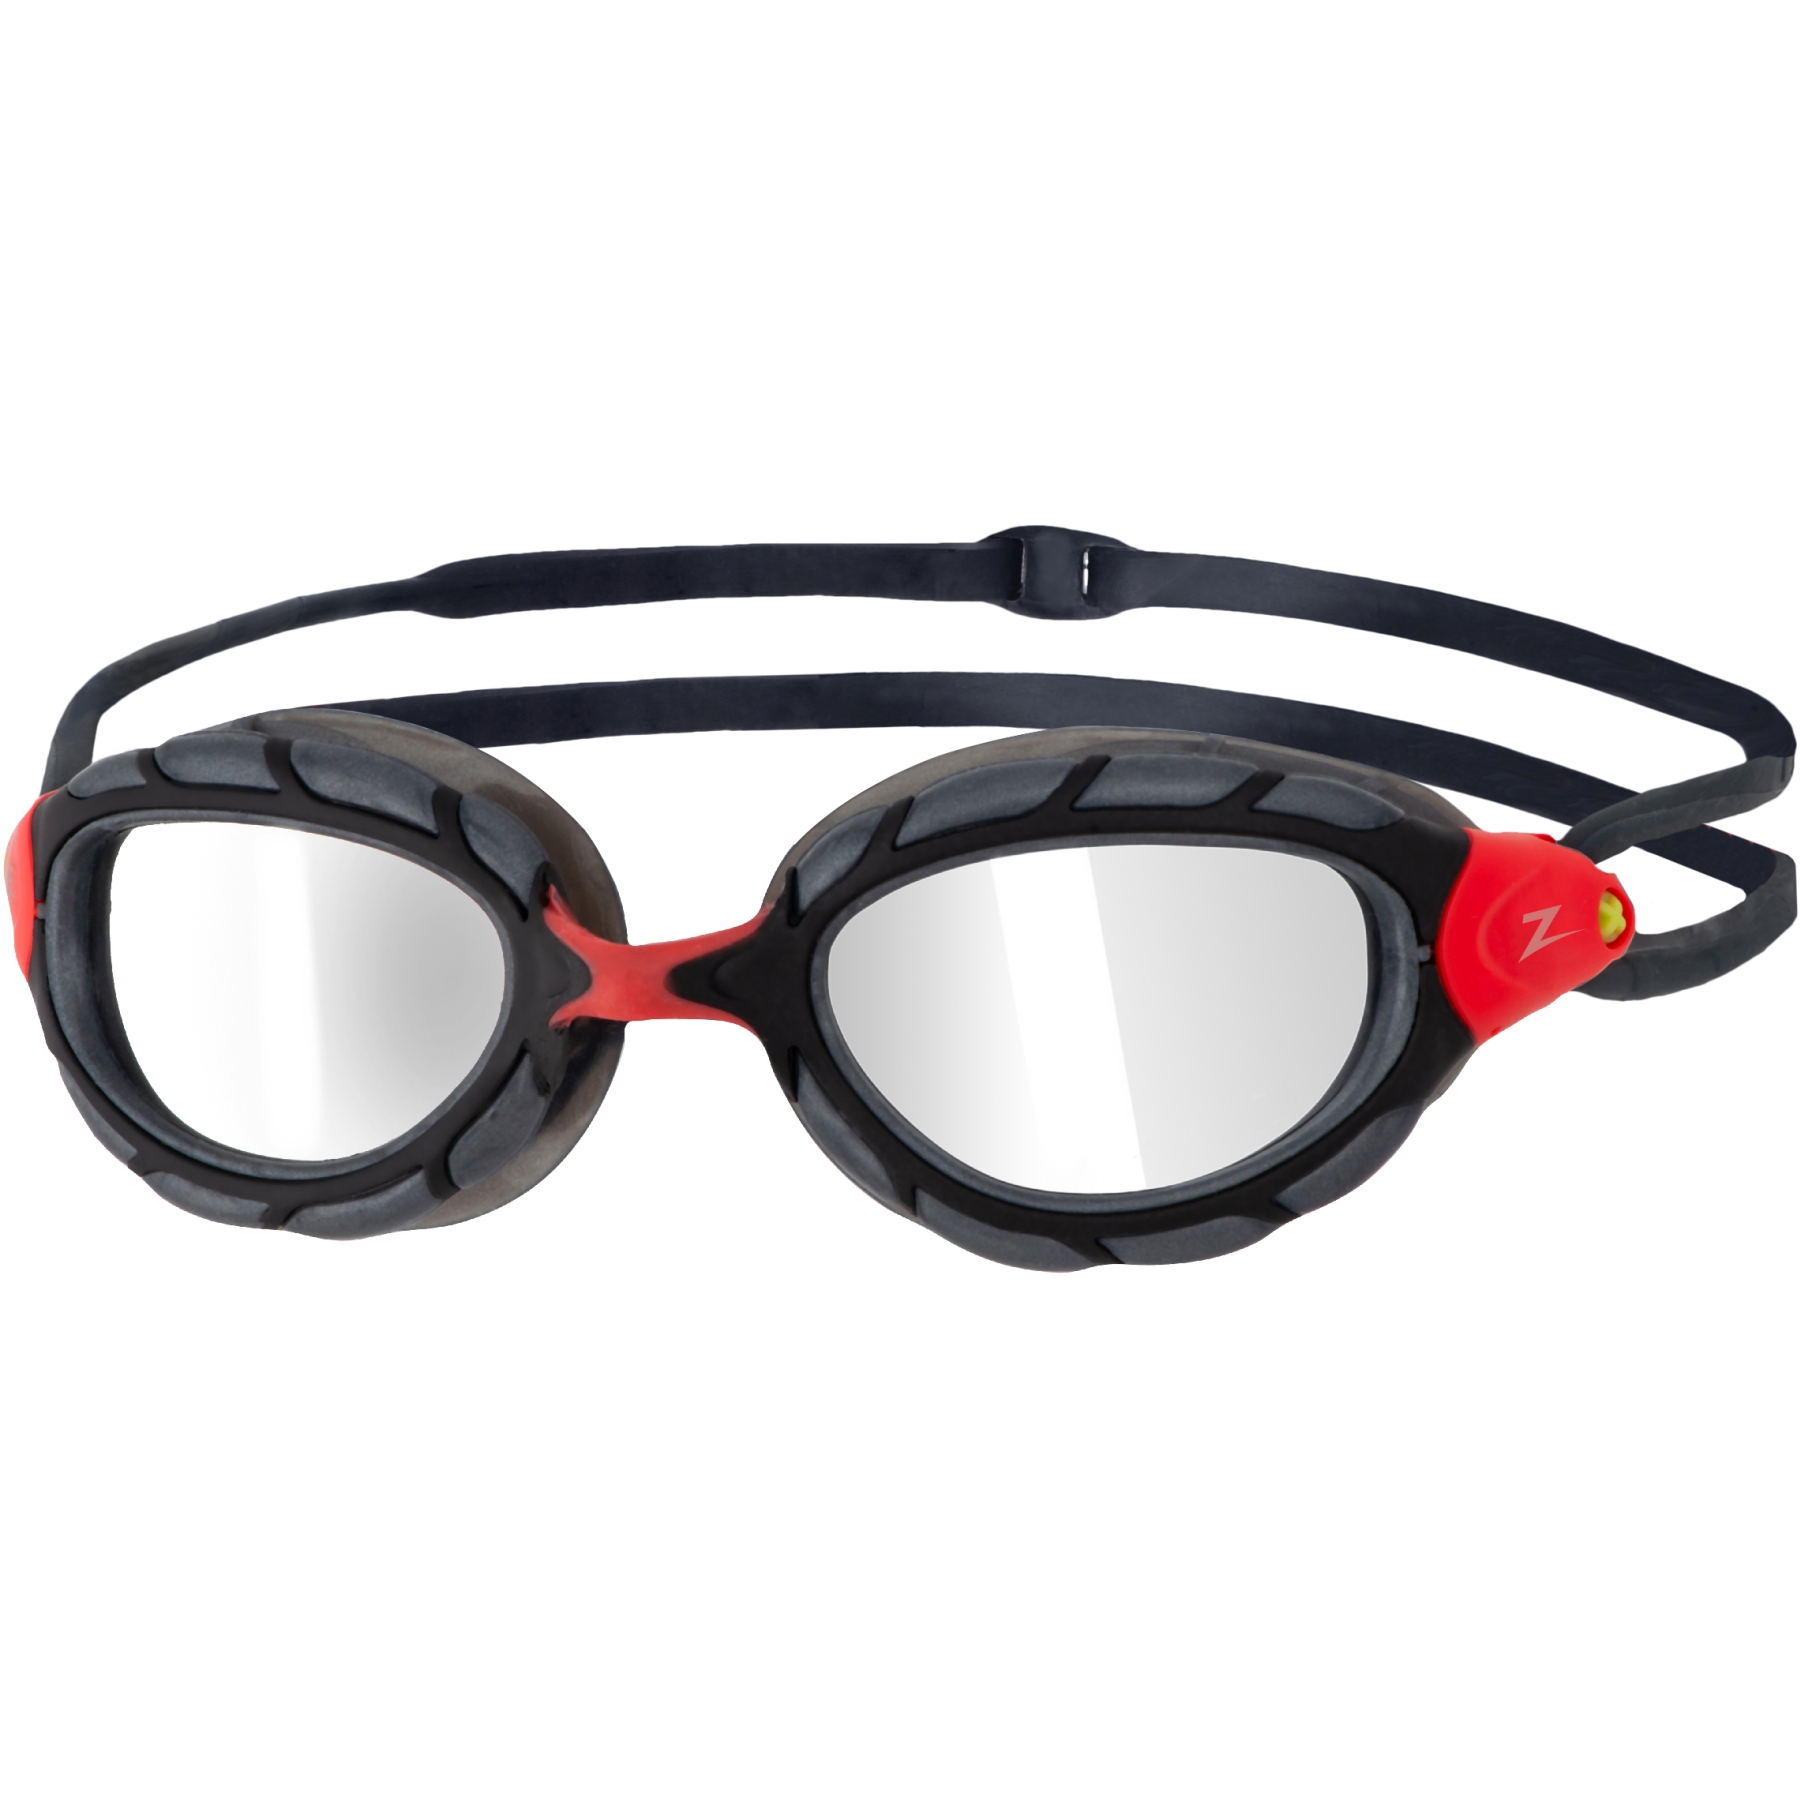 Produktbild von Zoggs Predator Titanium Schwimmbrille - Verspiegelte Gläser - Regular Fit - Rot/Grau